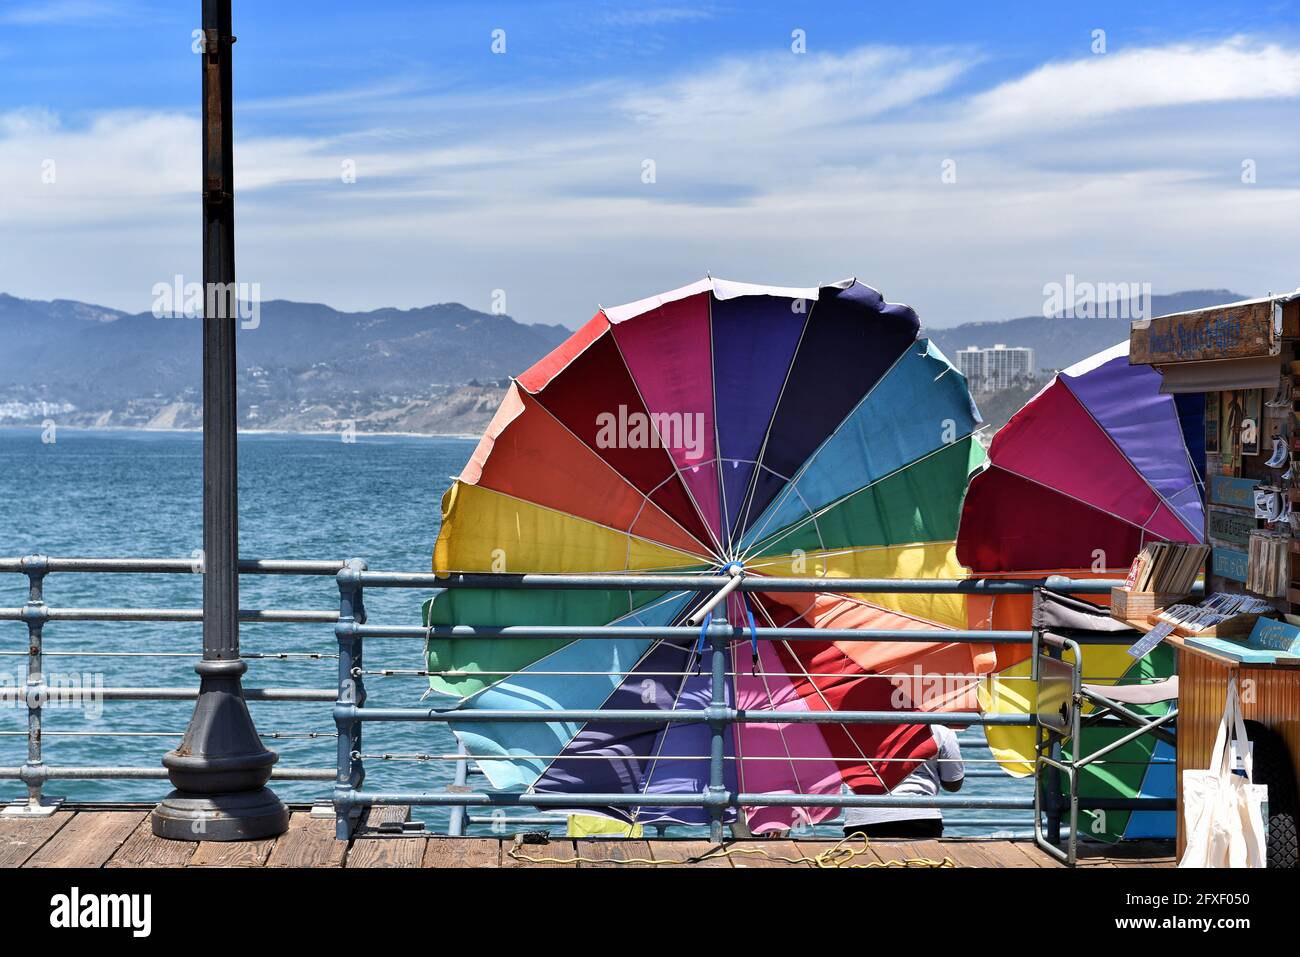 SANTA MONICA, CALIFORNIE - 25 MAI 2021 : parasols colorés sur la jetée avec les montagnes et la baie de Santa Monica en arrière-plan. Banque D'Images